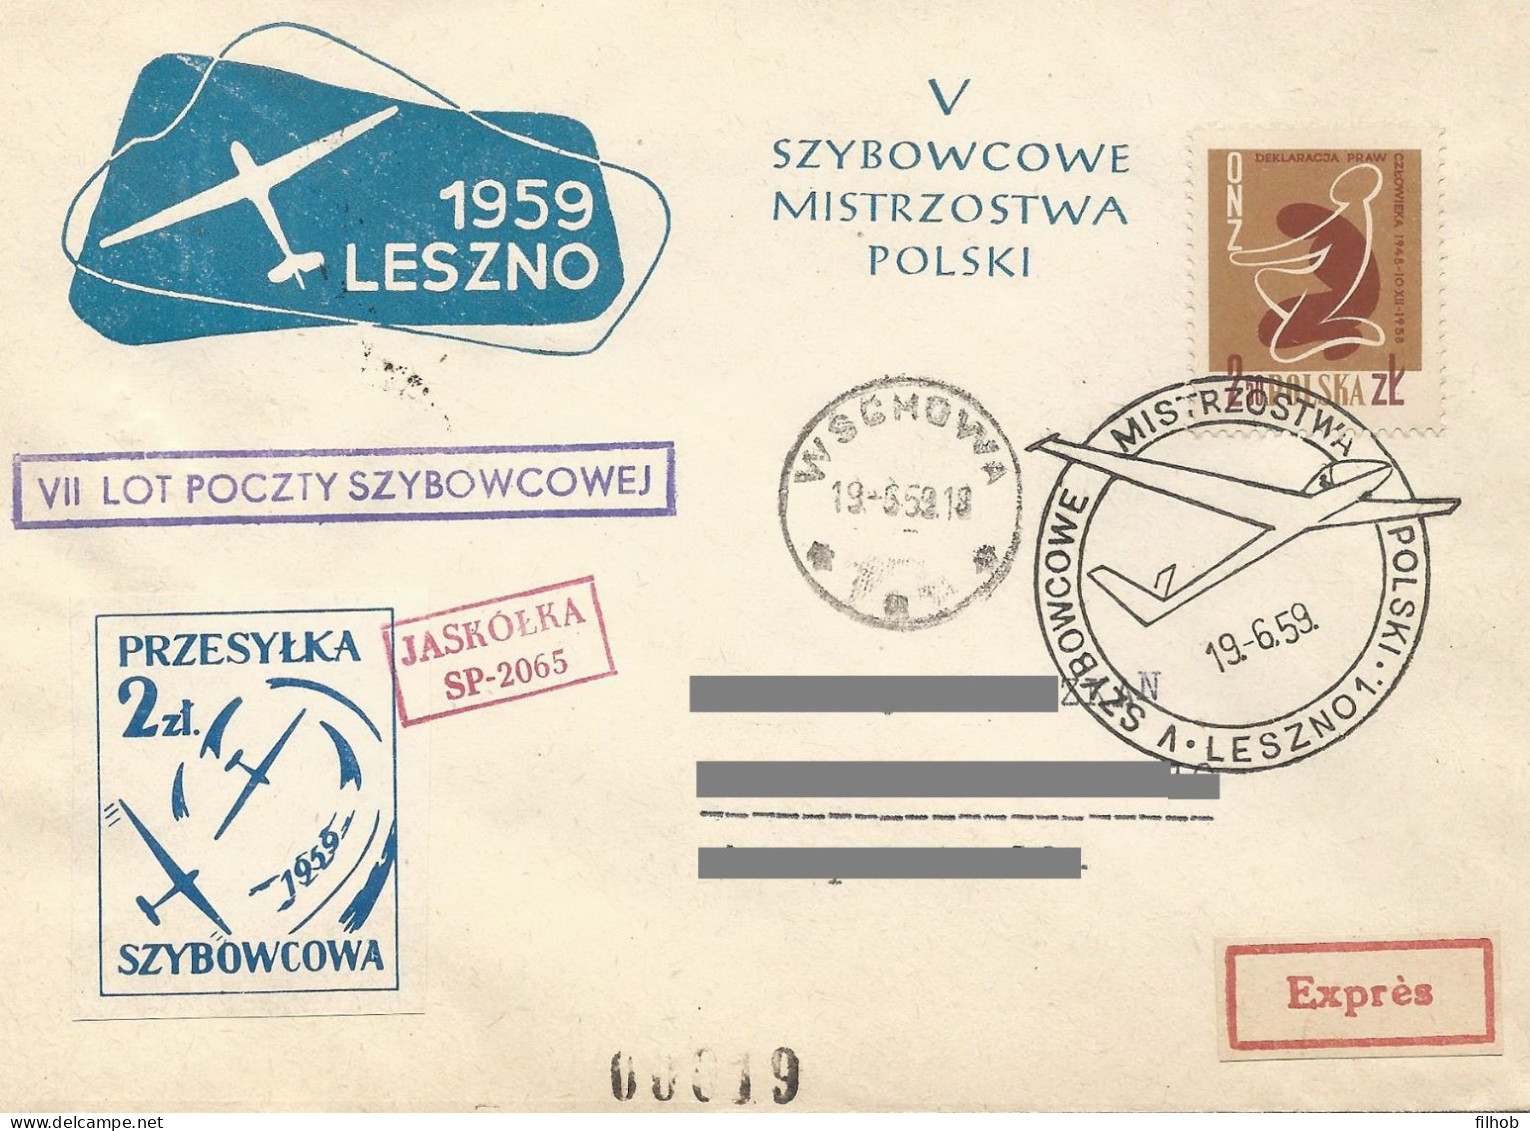 Poland Post - Glider PSZ.1959.lesz.06: Sport Leszno Polish Championships Jaskolka - Alianti